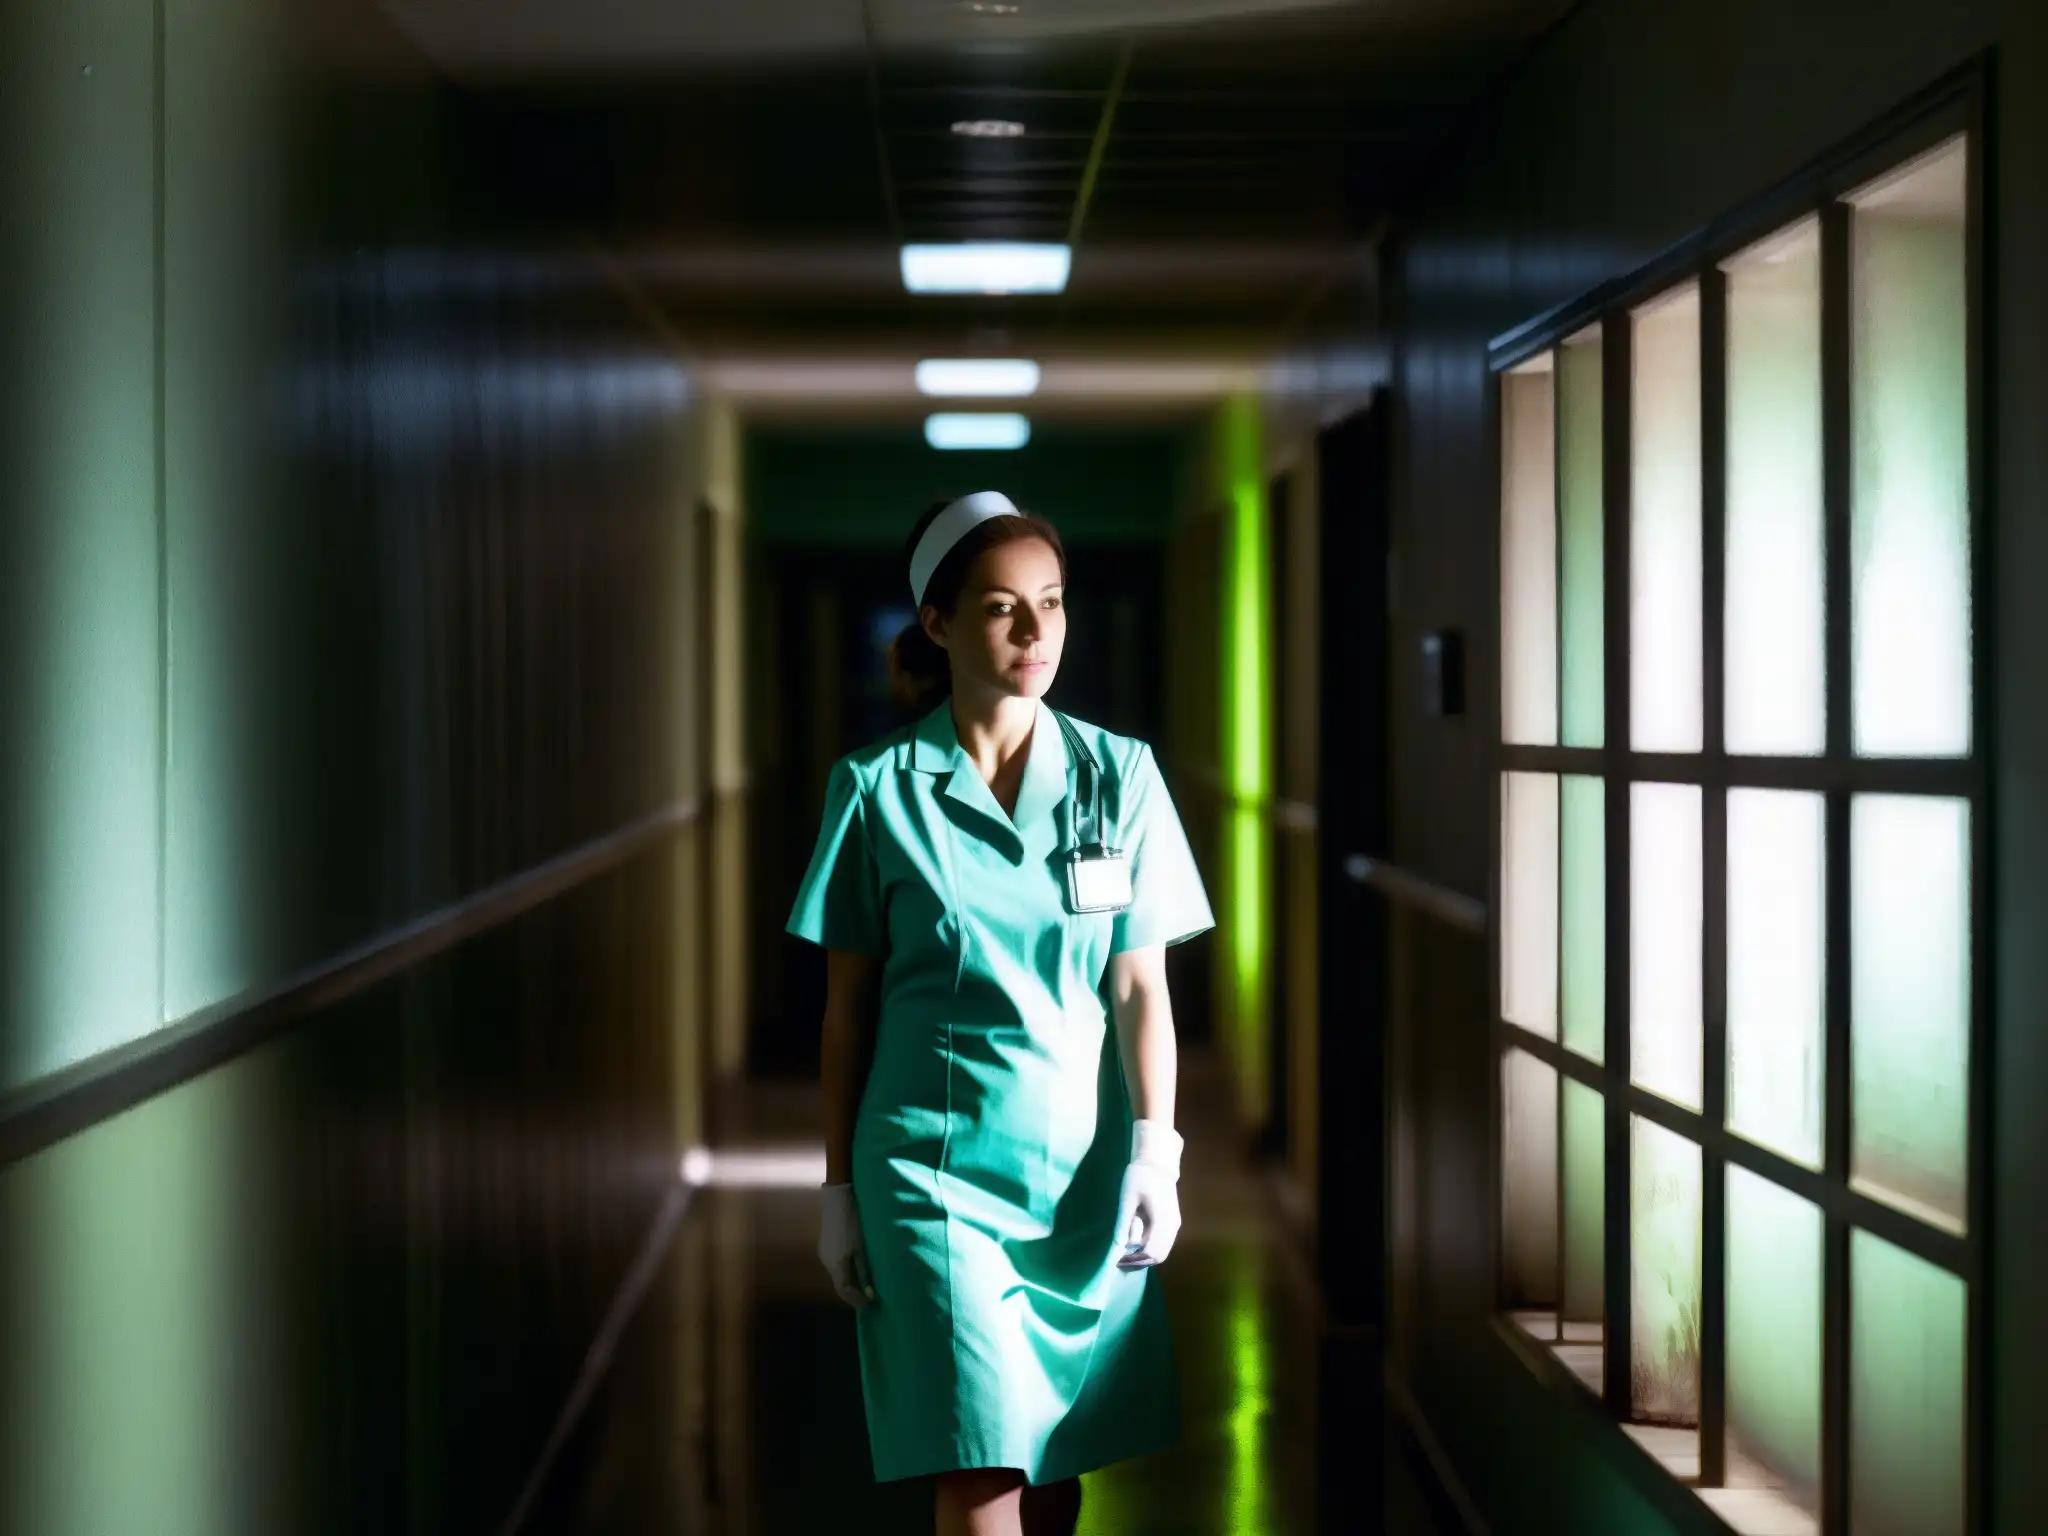 En un pasillo de hospital tenue, una enfermera en sombras evoca la legendaria La Planchada leyenda mexicana con su mirada enigmática